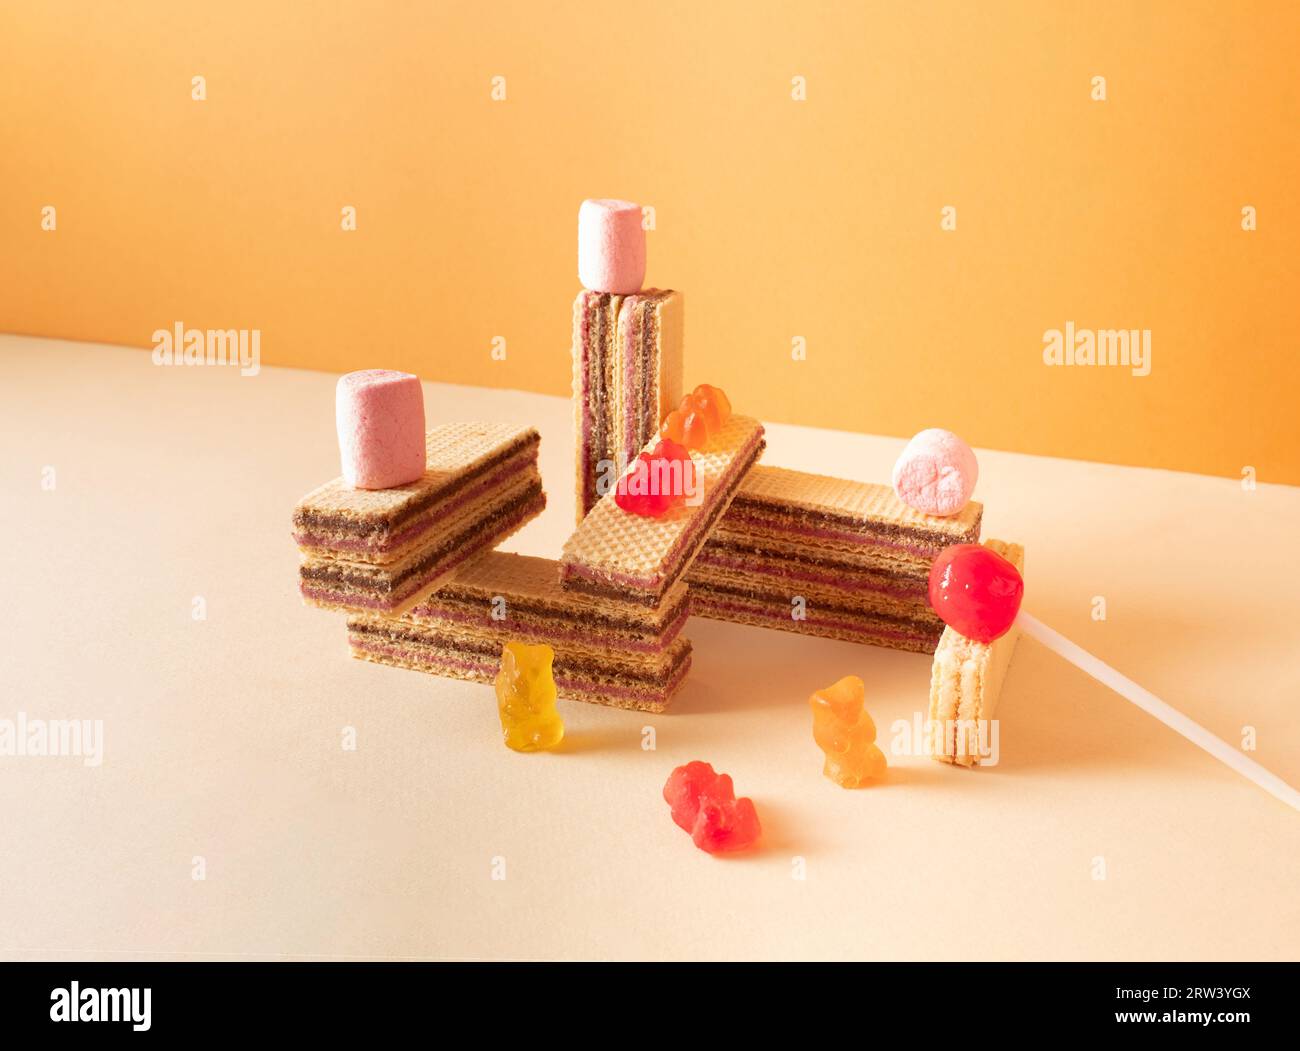 Sculpture de bonbons sur fond rose et orange. Concept alimentaire créatif. Banque D'Images